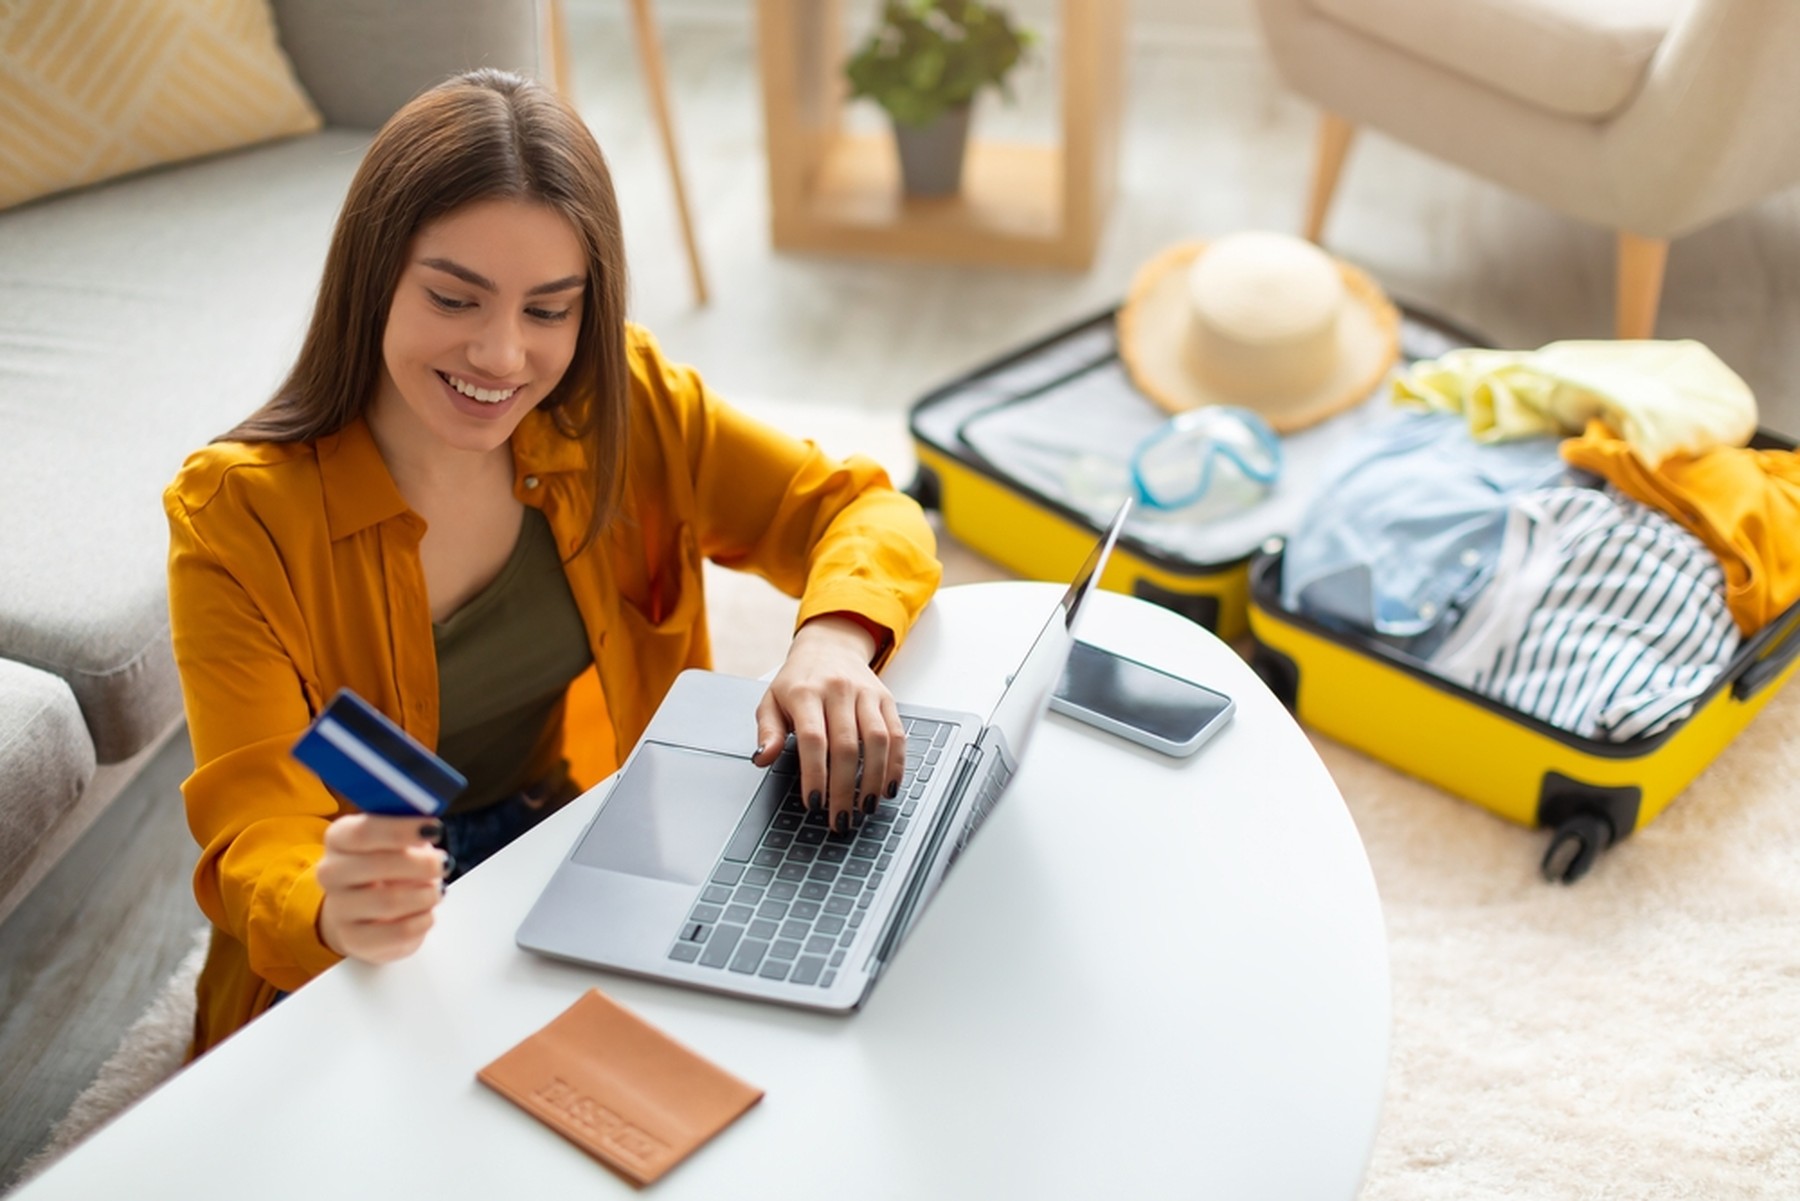 Mujer joven sonriendo mientras mira su tarjeta de crédito y utiliza un ordenador portátil. En la mesa tiene una libreta y al fondo se ve una maleta amarilla abierta.